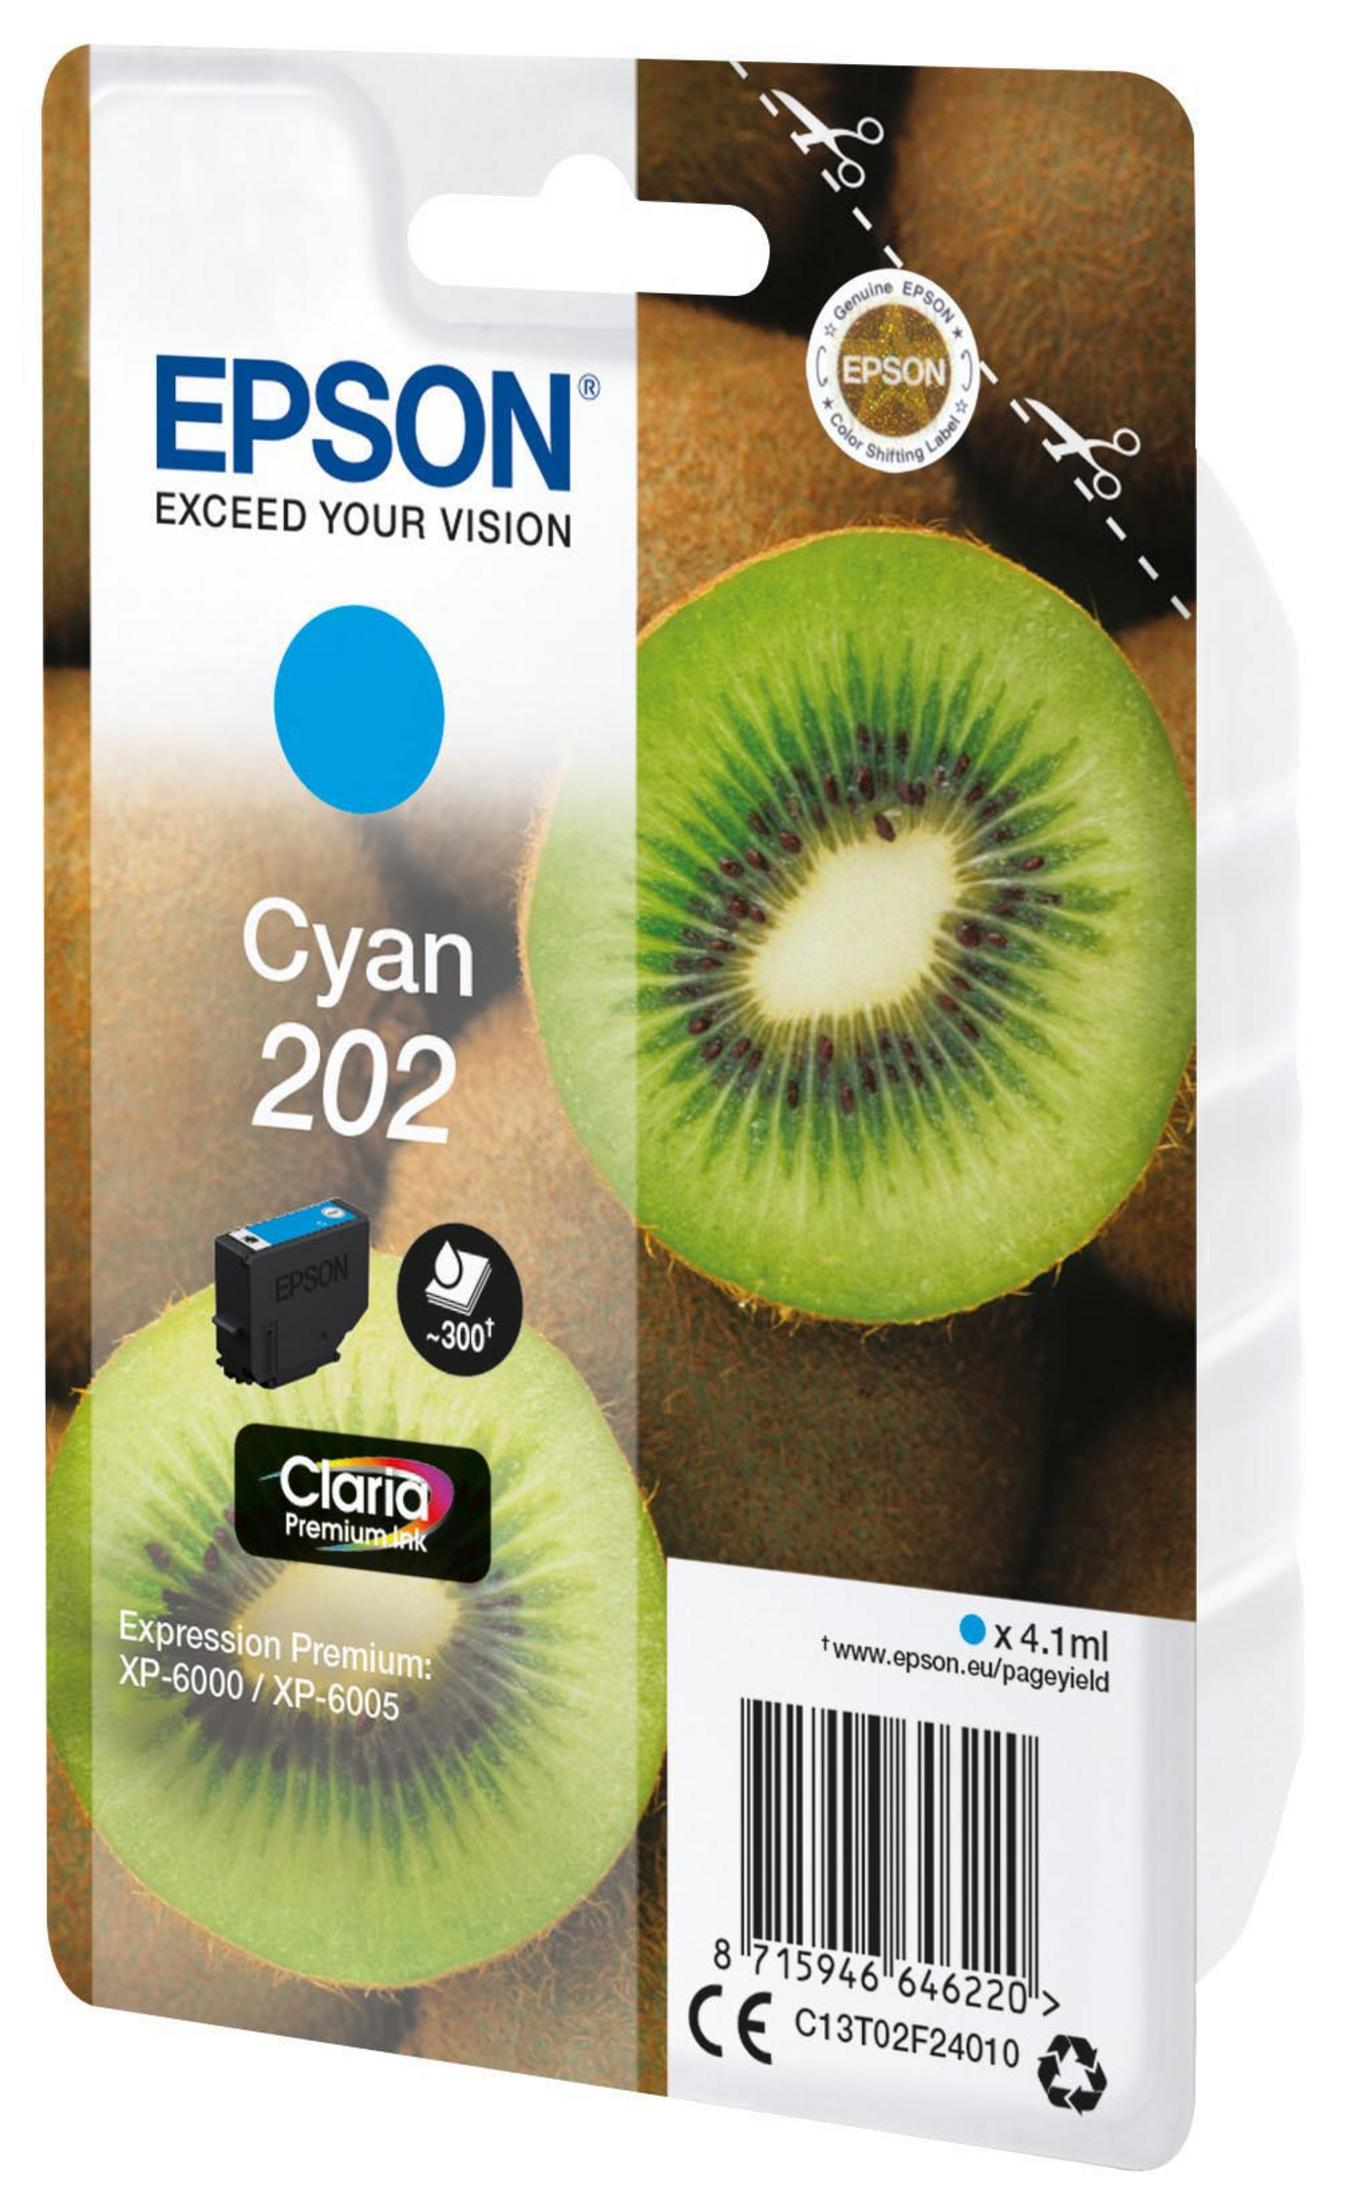 EPSON 202 (C13T02F24010) cyan Tinte